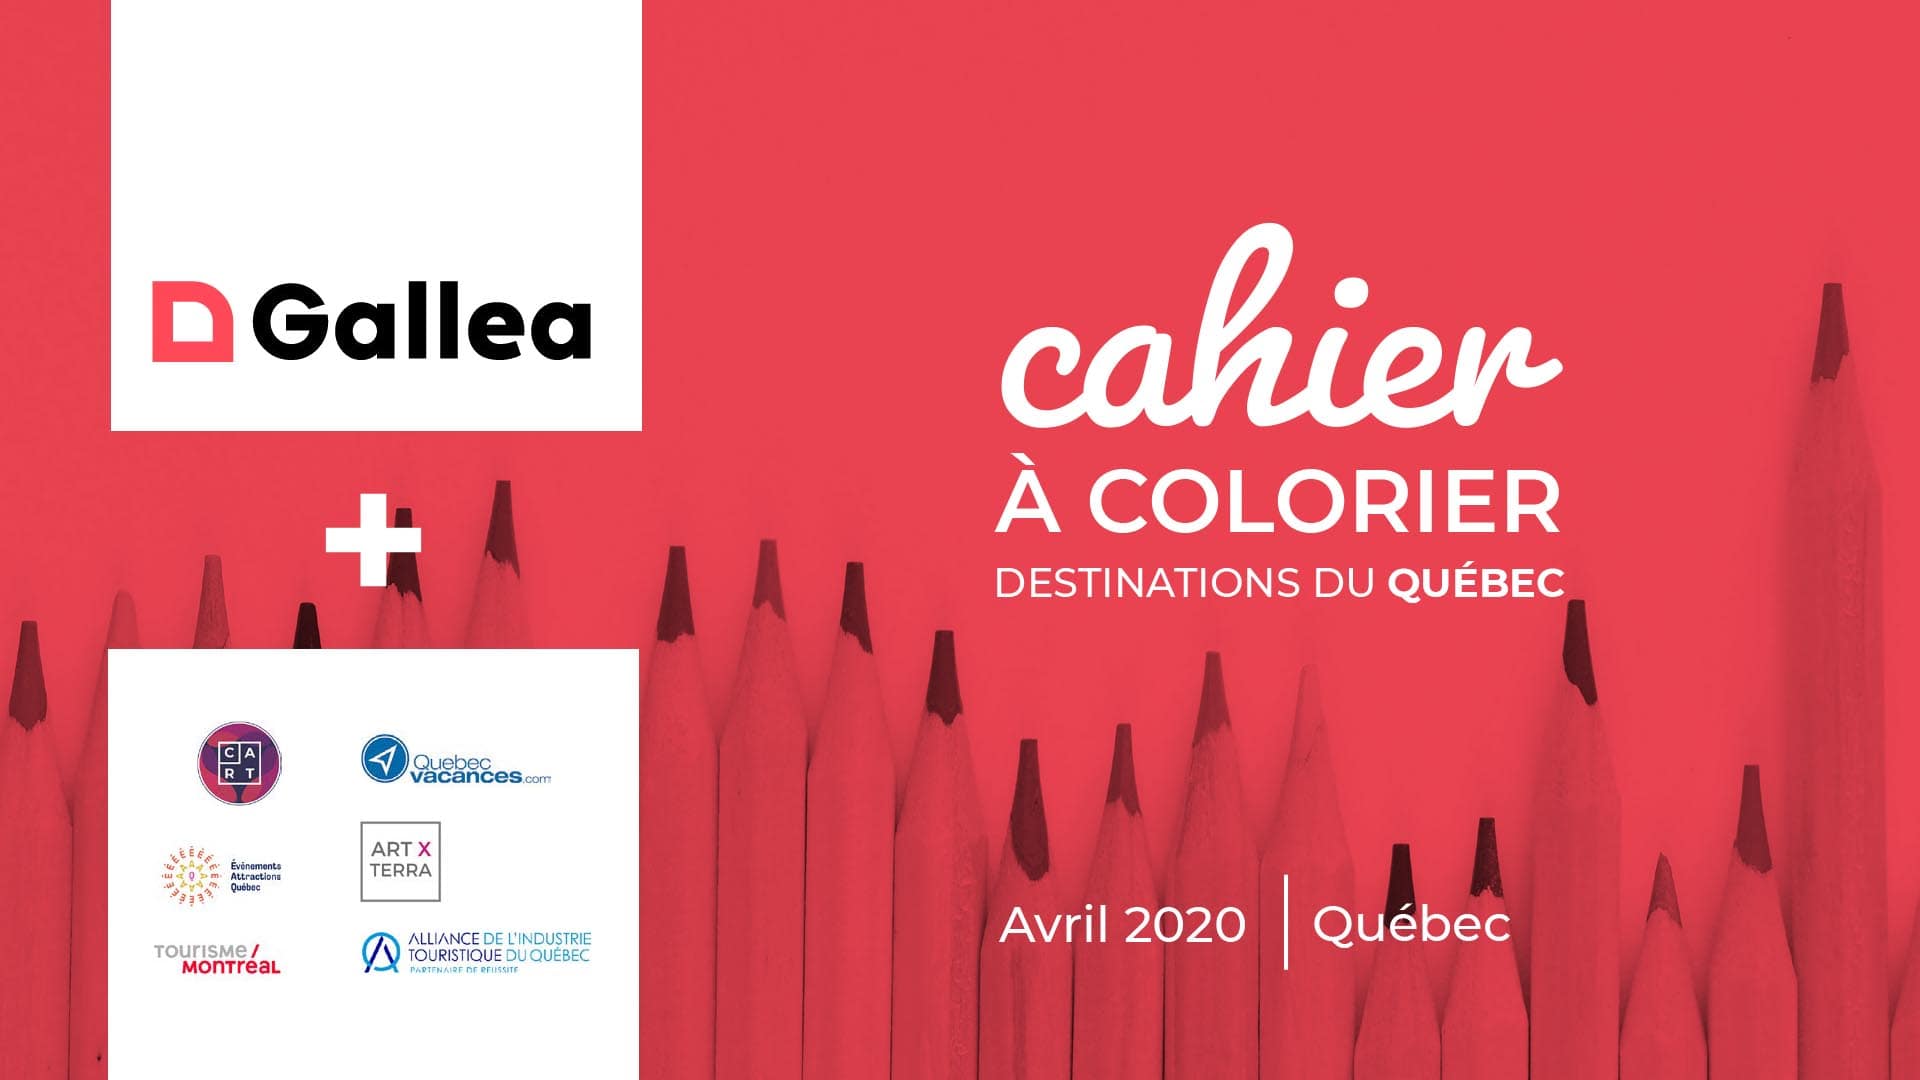 Cahier à colorier, destinations du Québec